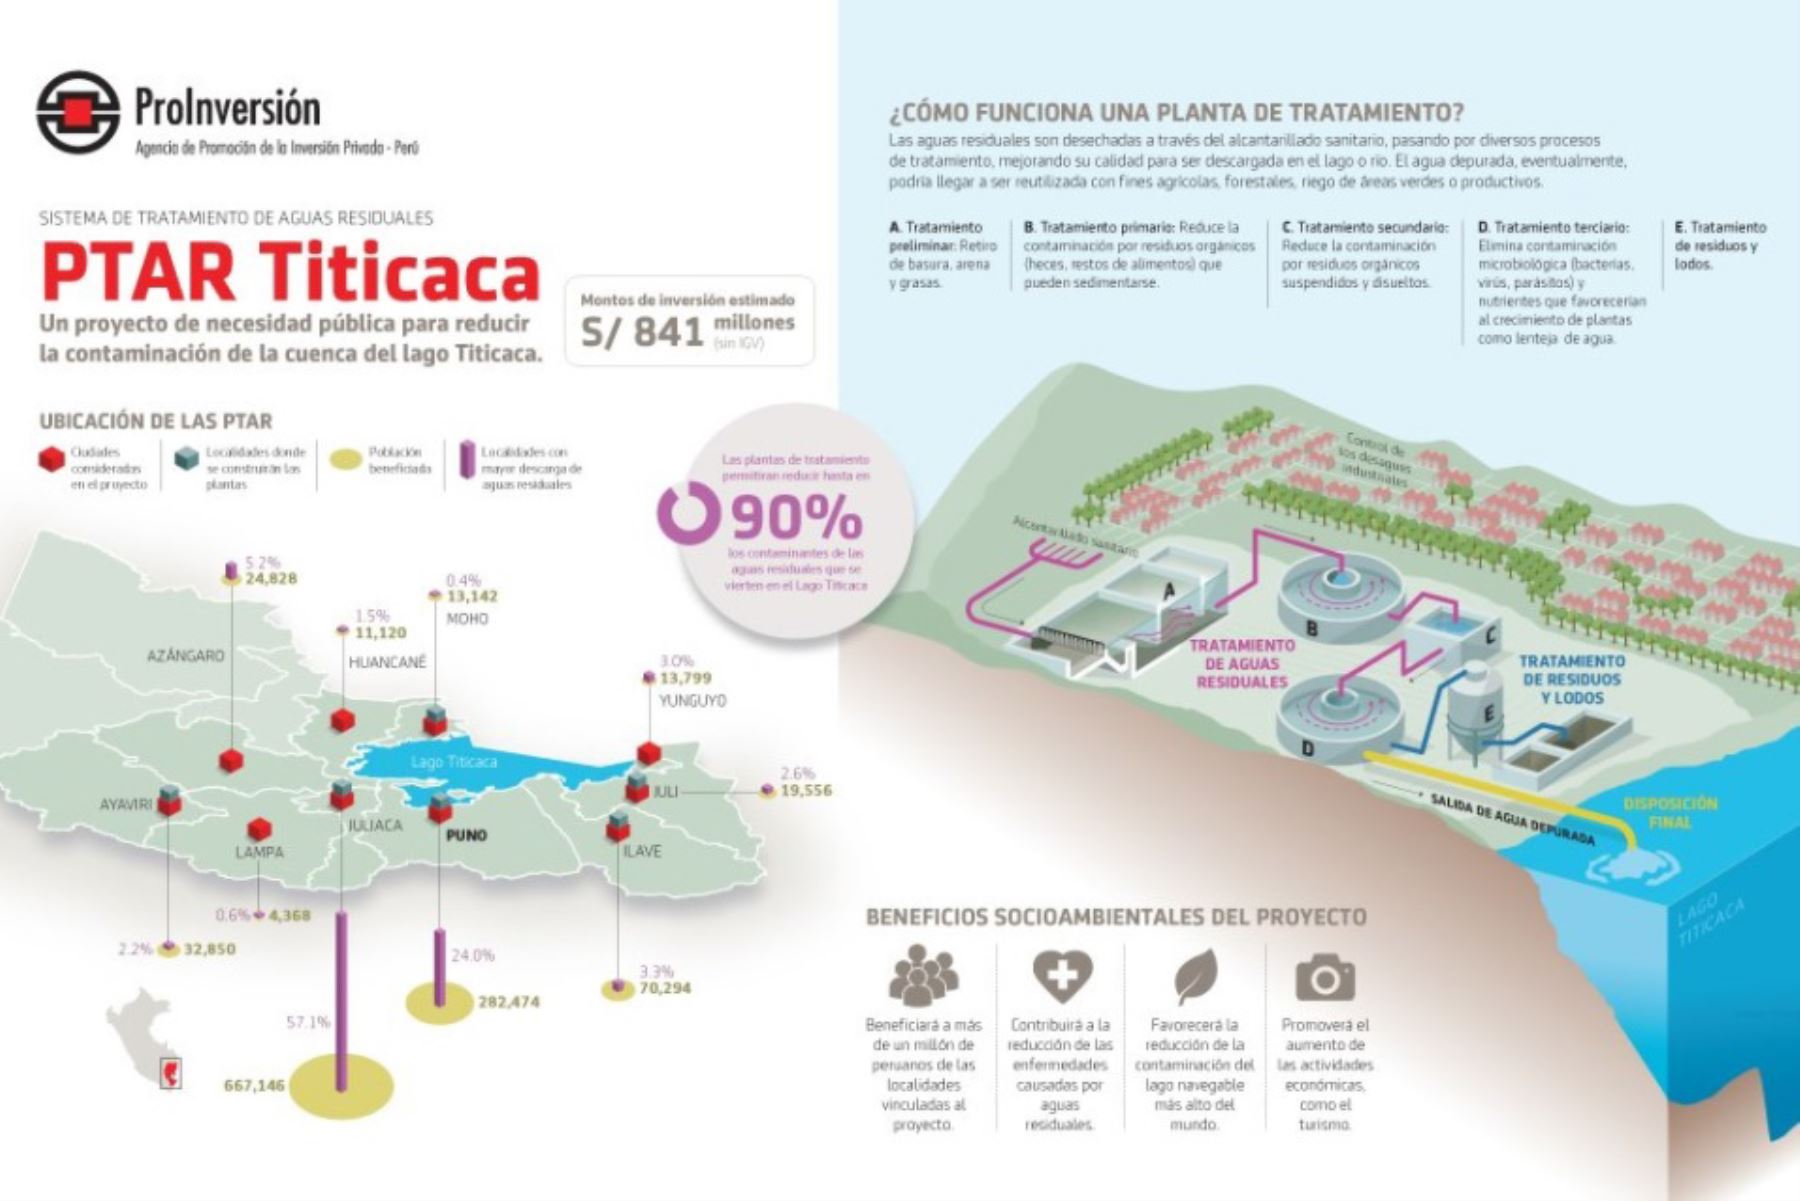 Proyecto Sistema de Tratamiento de aguas residuales (PTAR) del Titicaca atrae a inversionistas mexicanos, destaca ProInversión. ANDINA/Difusión